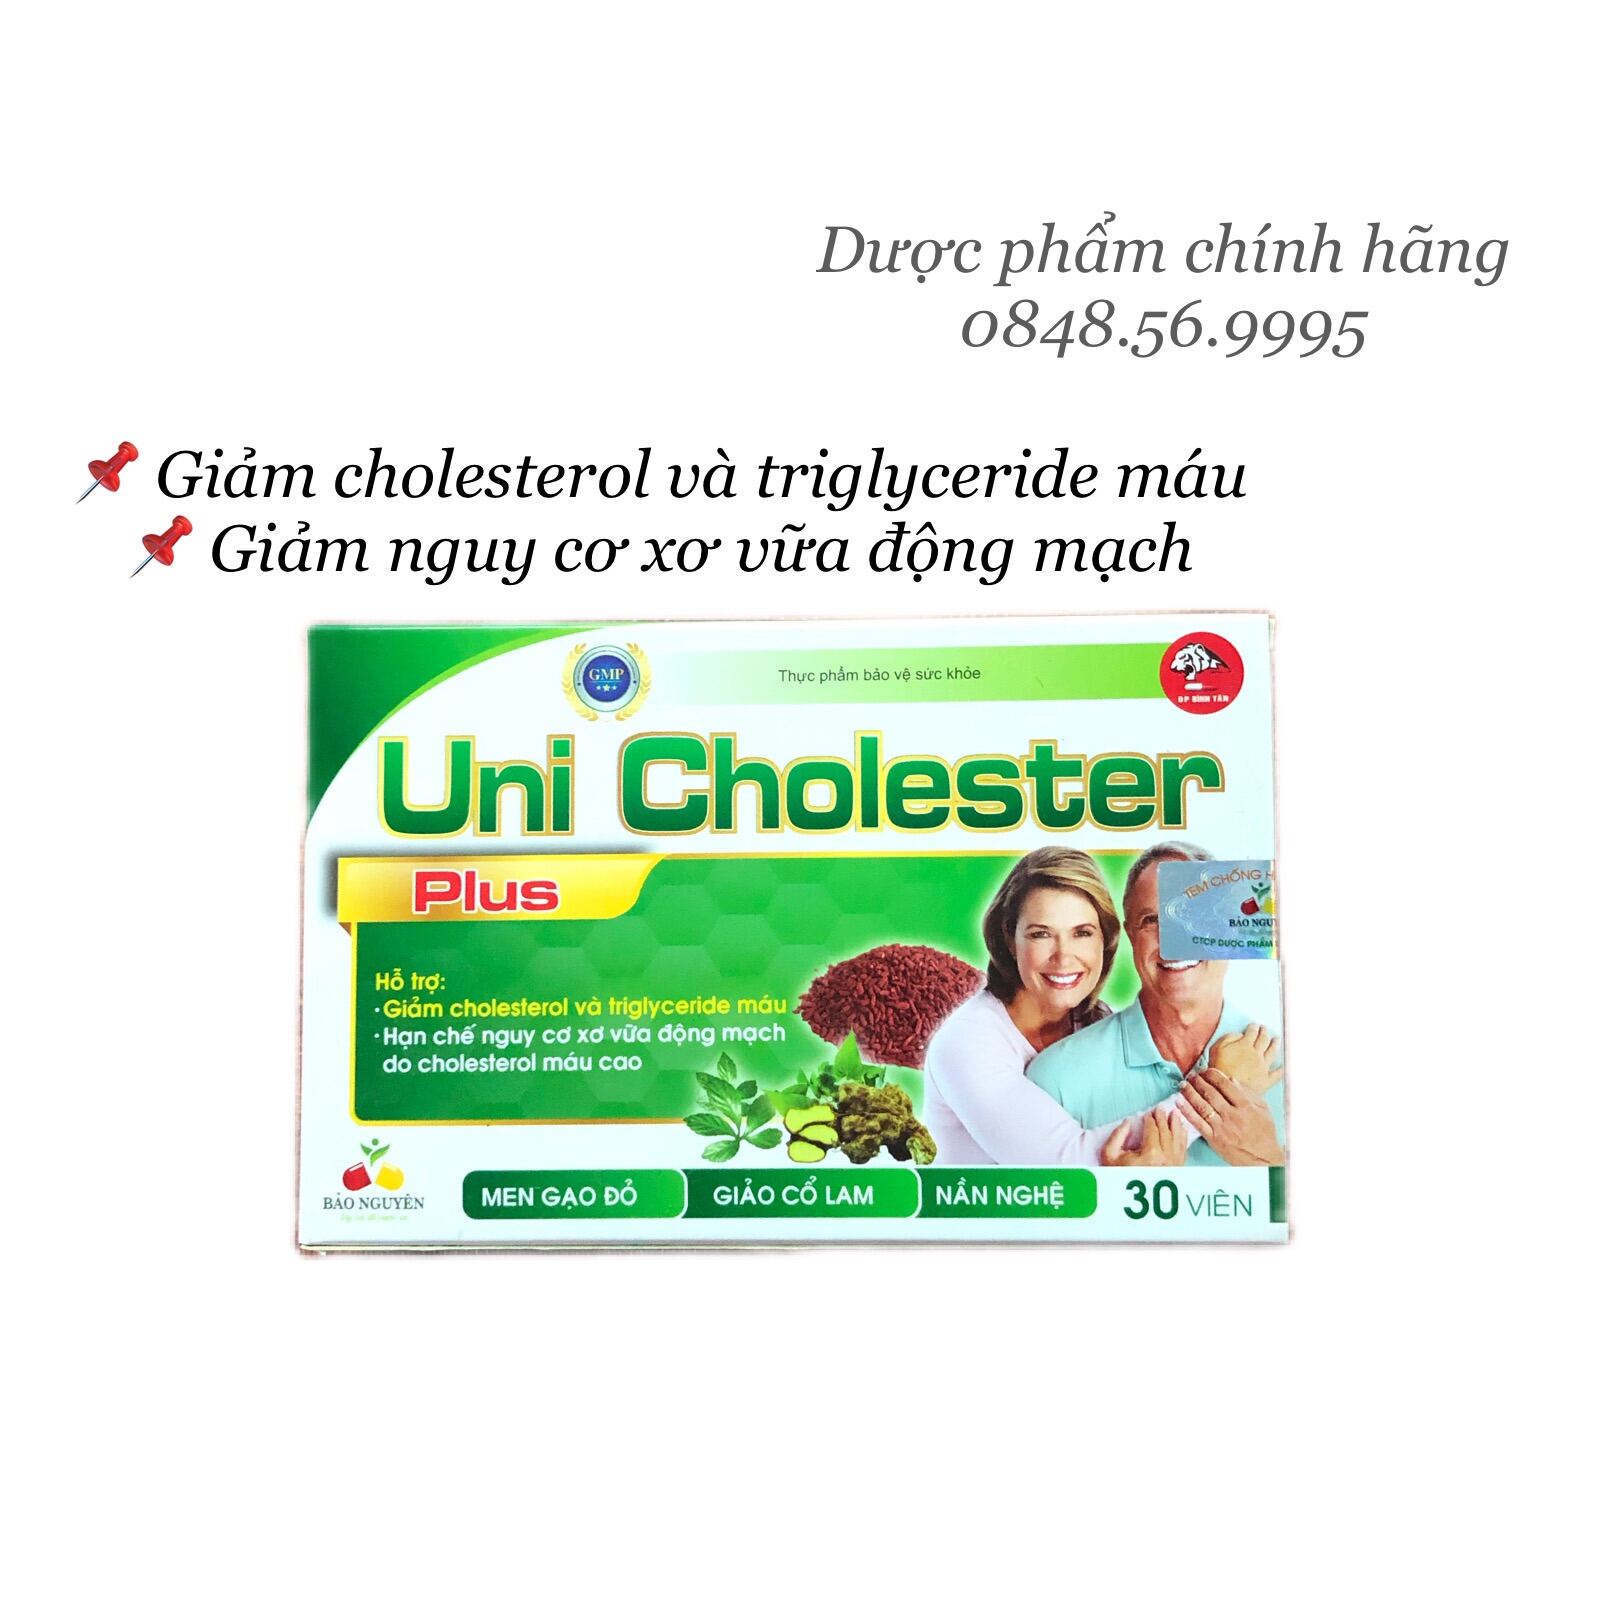 UNI CHOLESTER hộp 30 viên -Giảm cholesterol và triglyceride máu